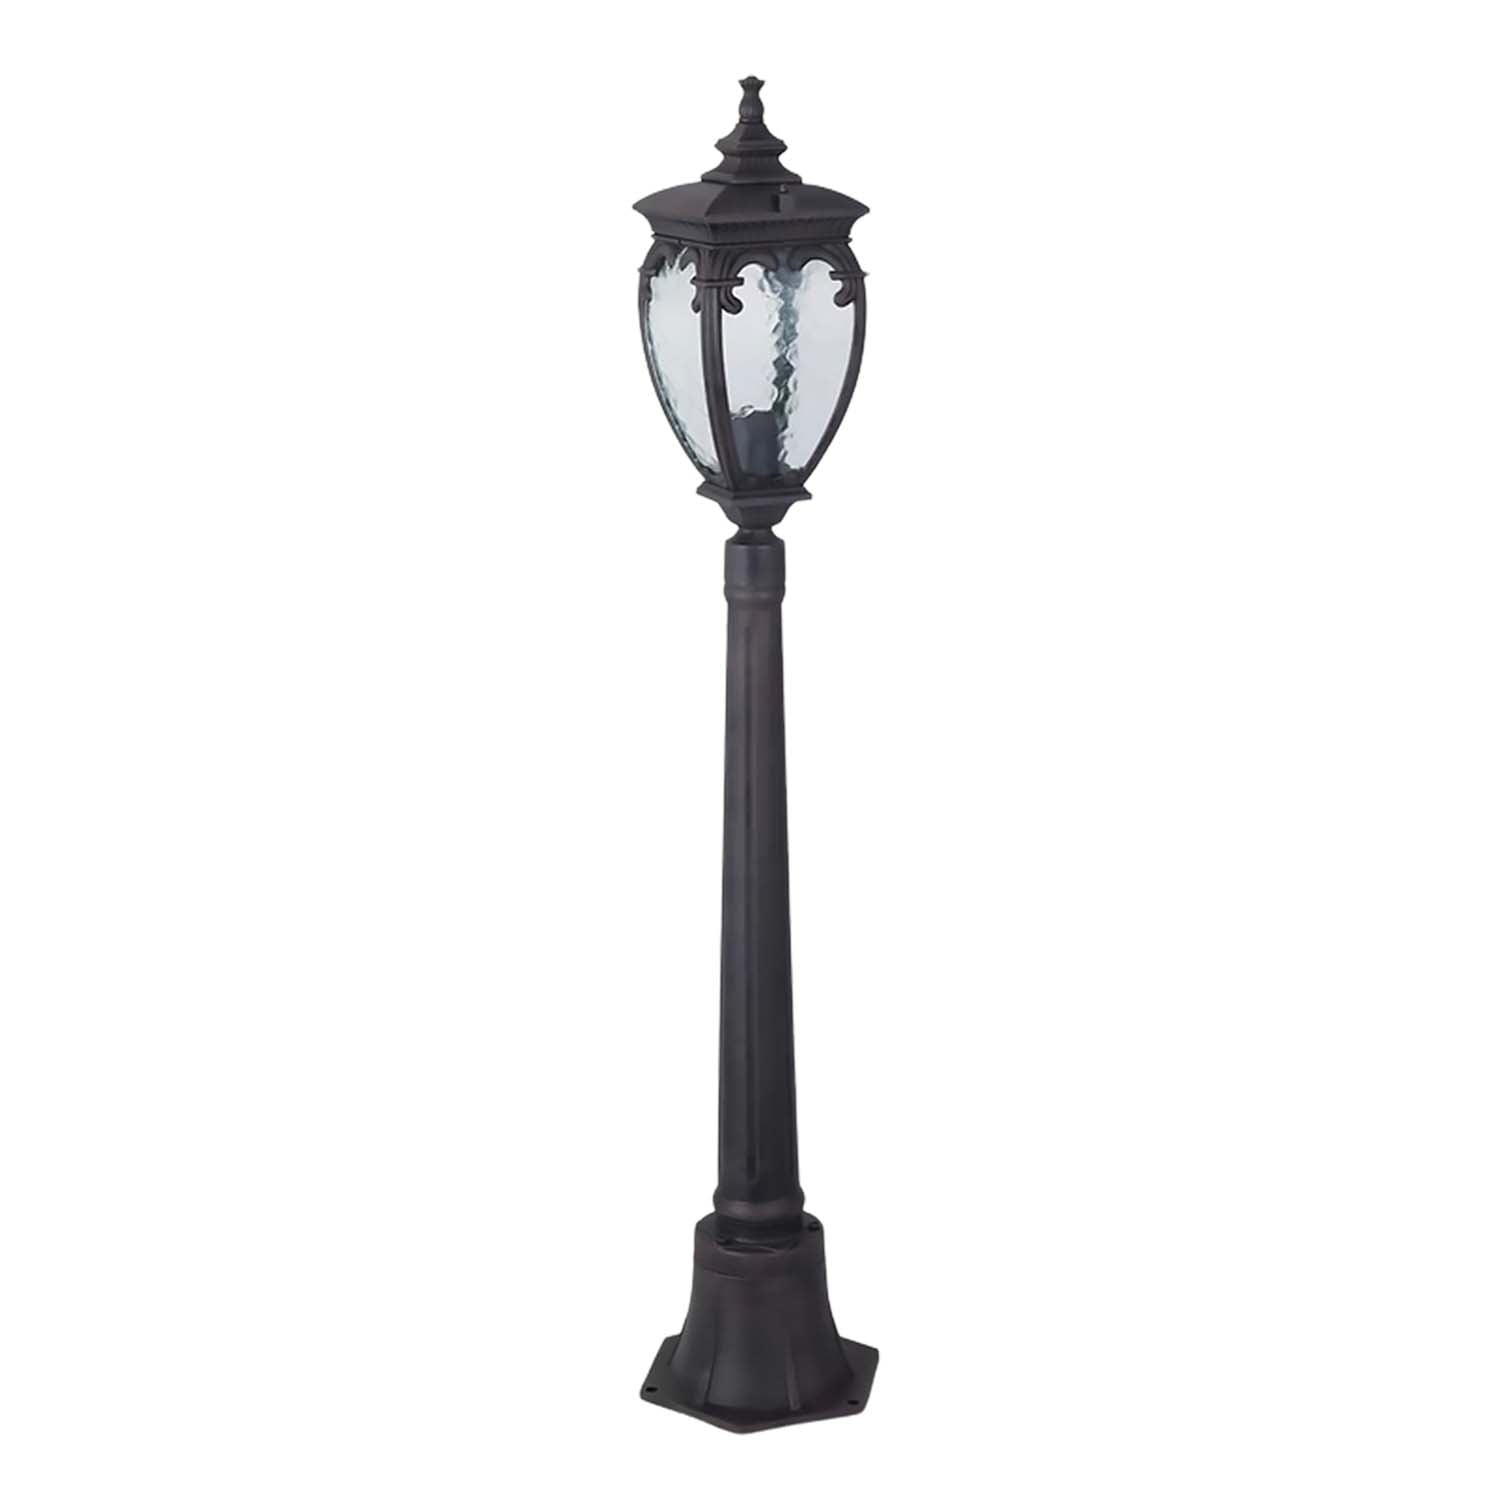 FLEUR - Vintage Italian style lantern outdoor floor lamp